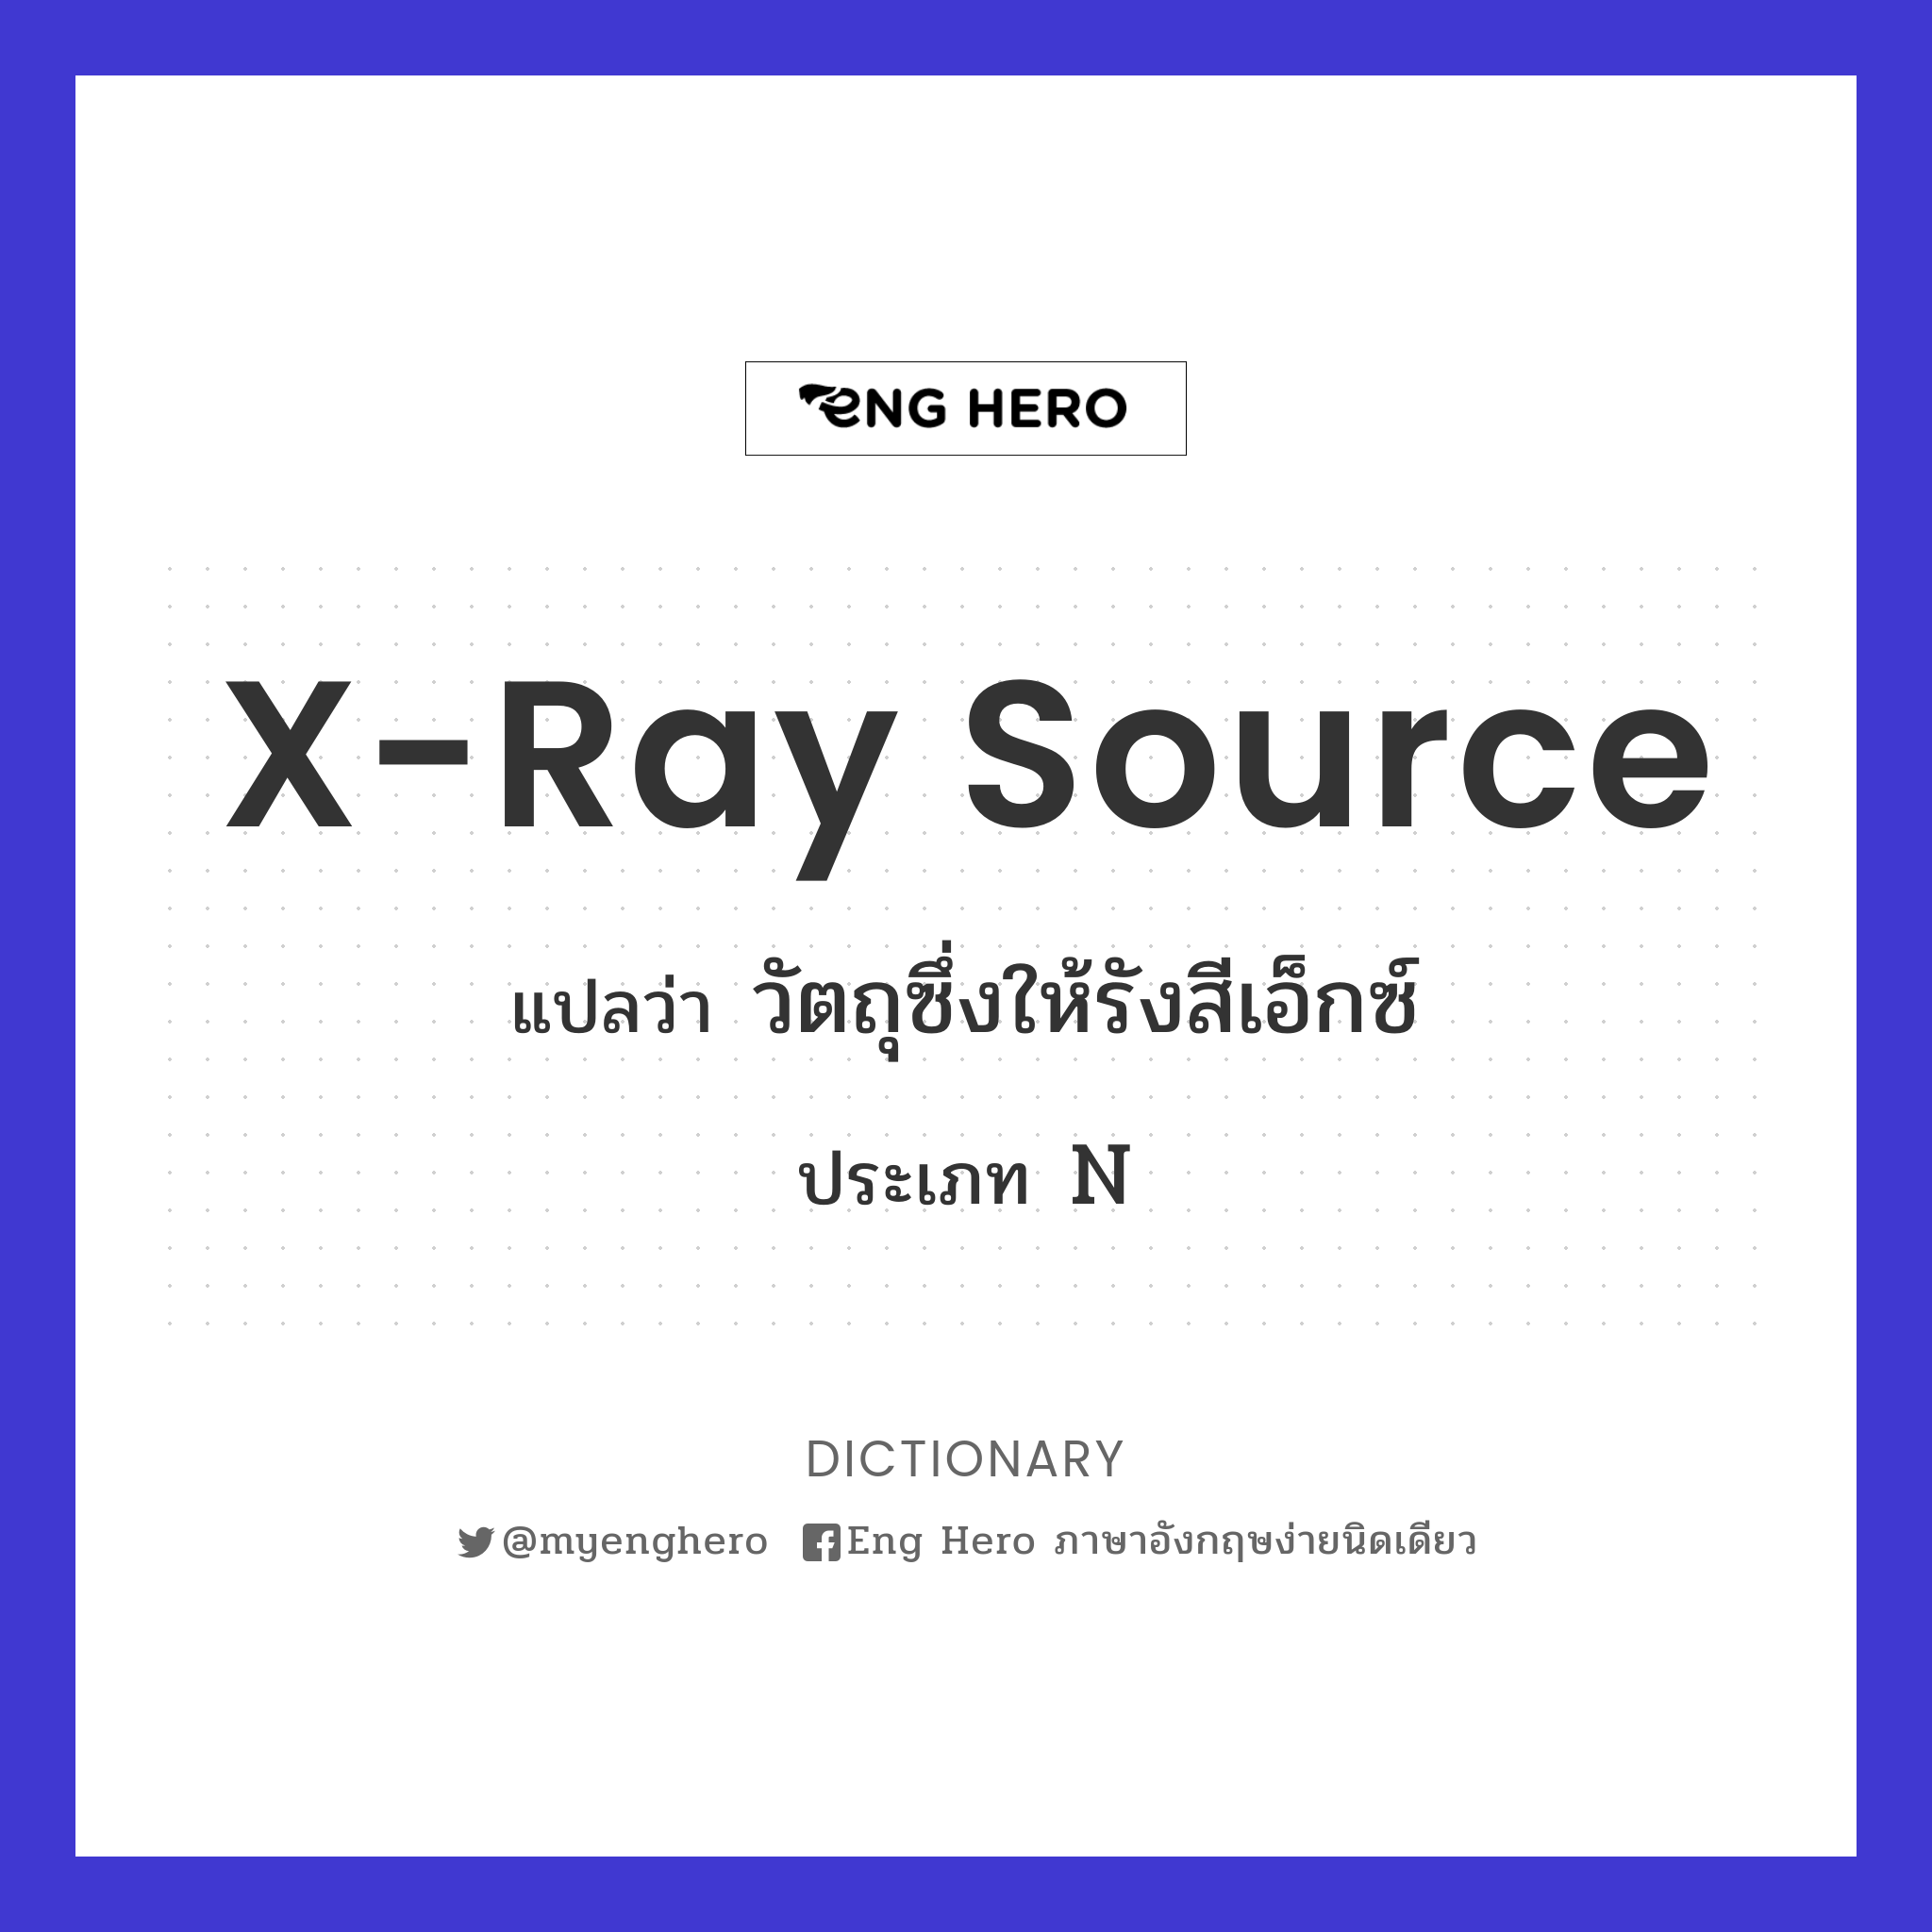 X-ray source